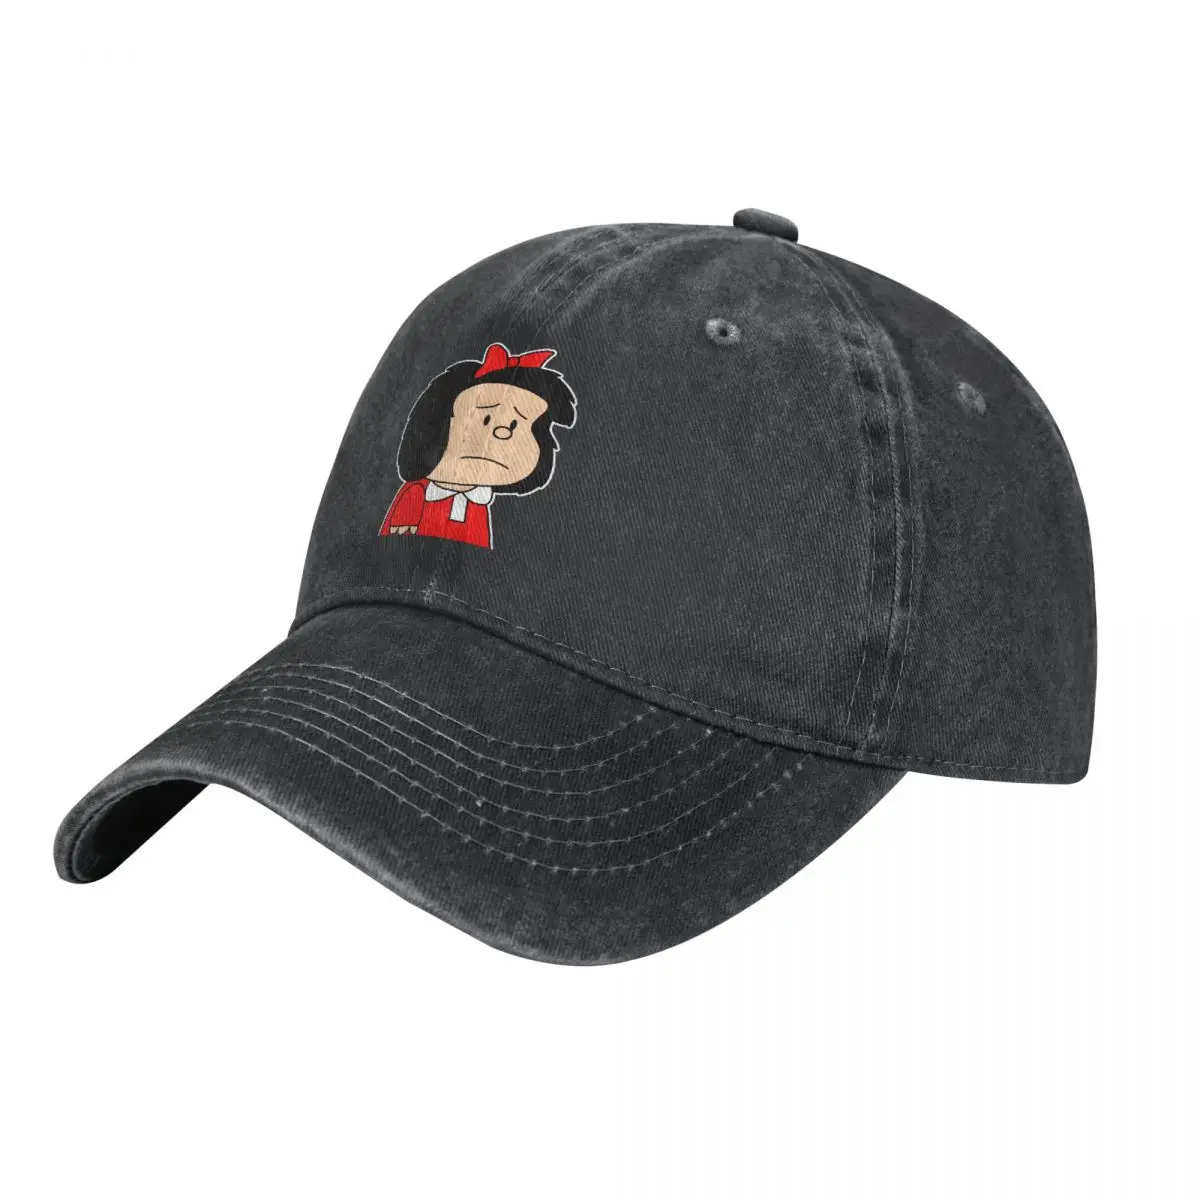 Забавная бейсболка Mafalda Comic Quino Хлопчатобумажные шляпы Регулируемая шляпа Модная повседневная кепка для водителя грузовика